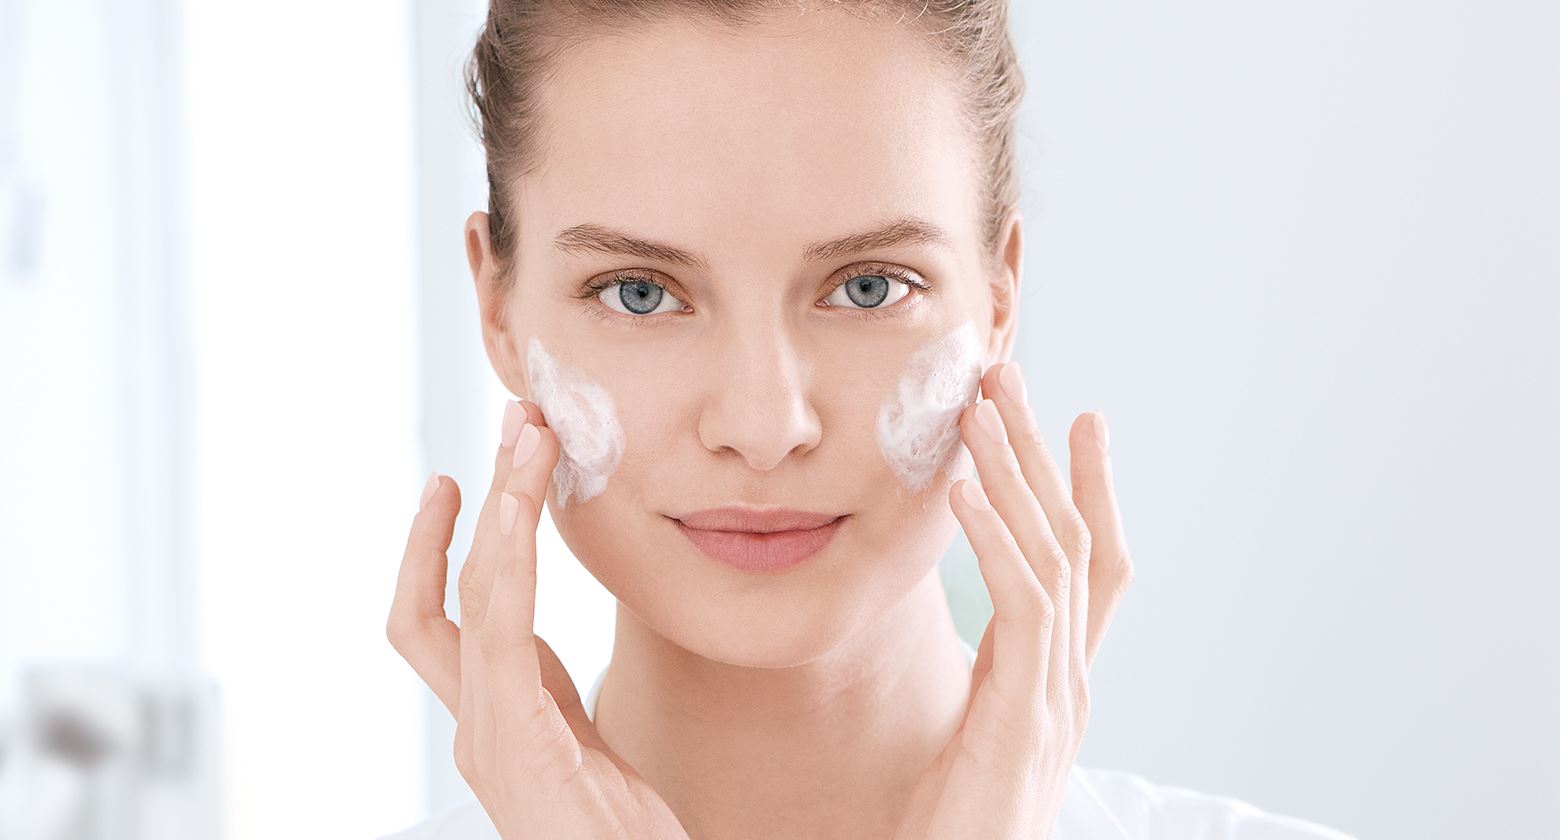 Bước sang tuổi 30, tốc độ lão hoá da sẽ ngày càng nhanh do các sợi collagen bị đứt gãy khiến da trở nên thâm sạm, sần sùi và hình thành các nếp nhăn.